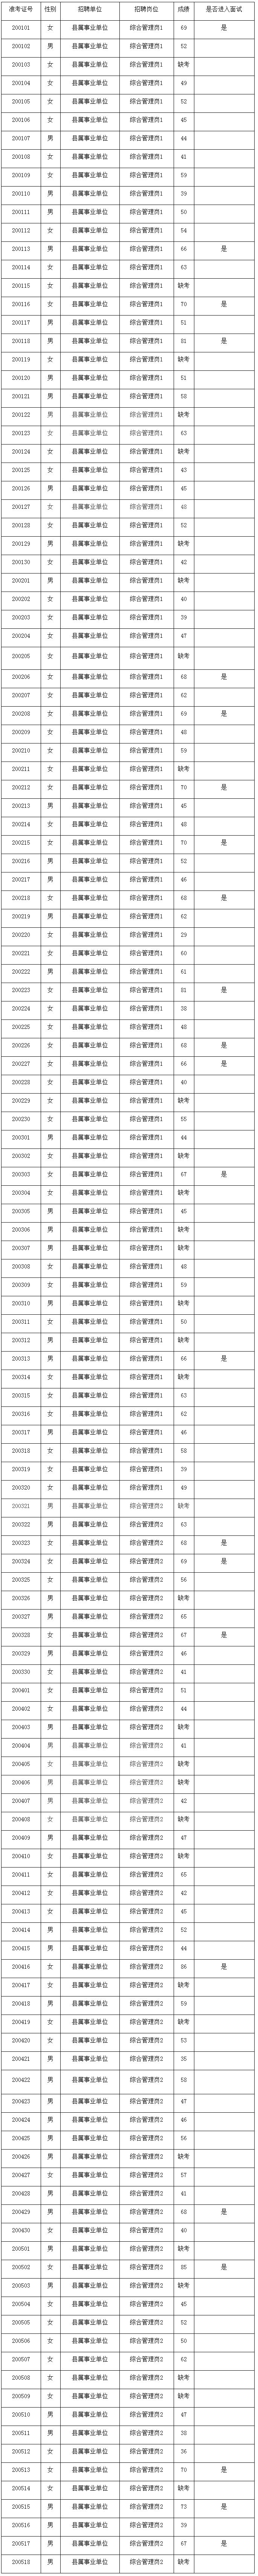 2020年三季度丰都县事业单位考核招聘笔试成绩进面名单